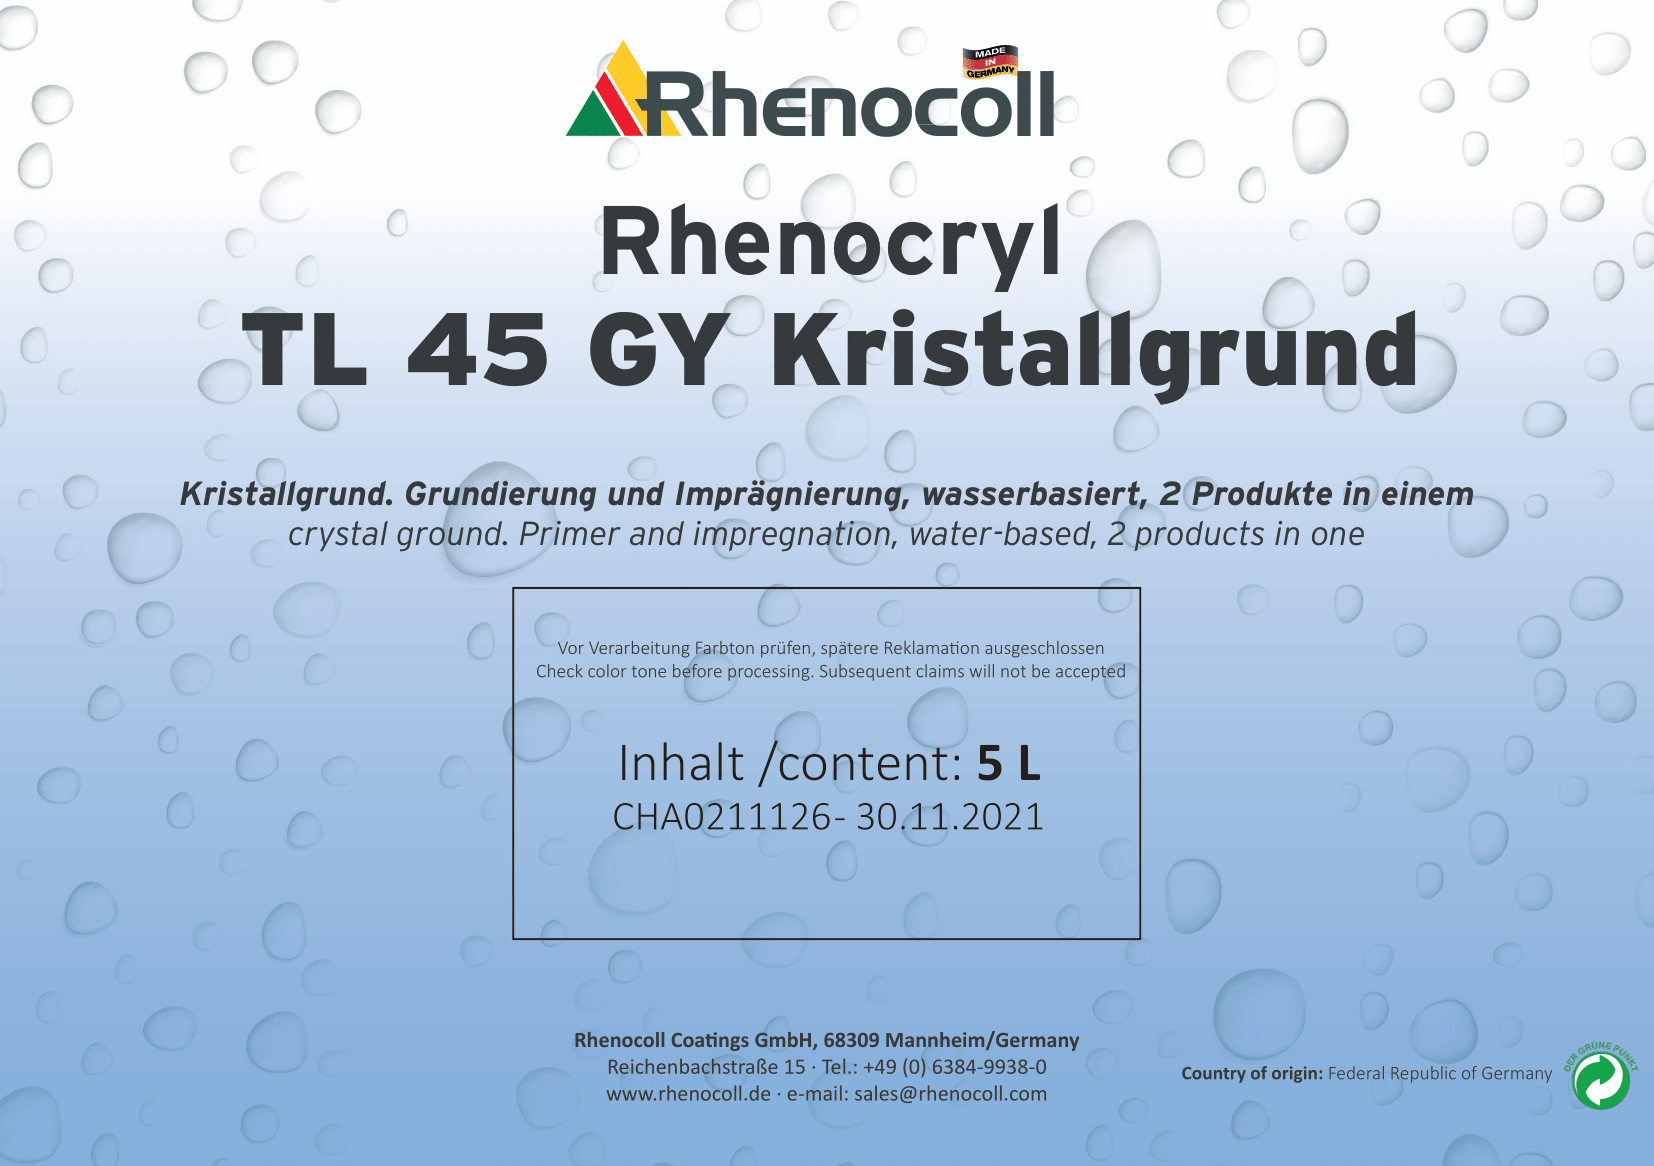 Rhenocryl TL 45 GY Kristallgrund